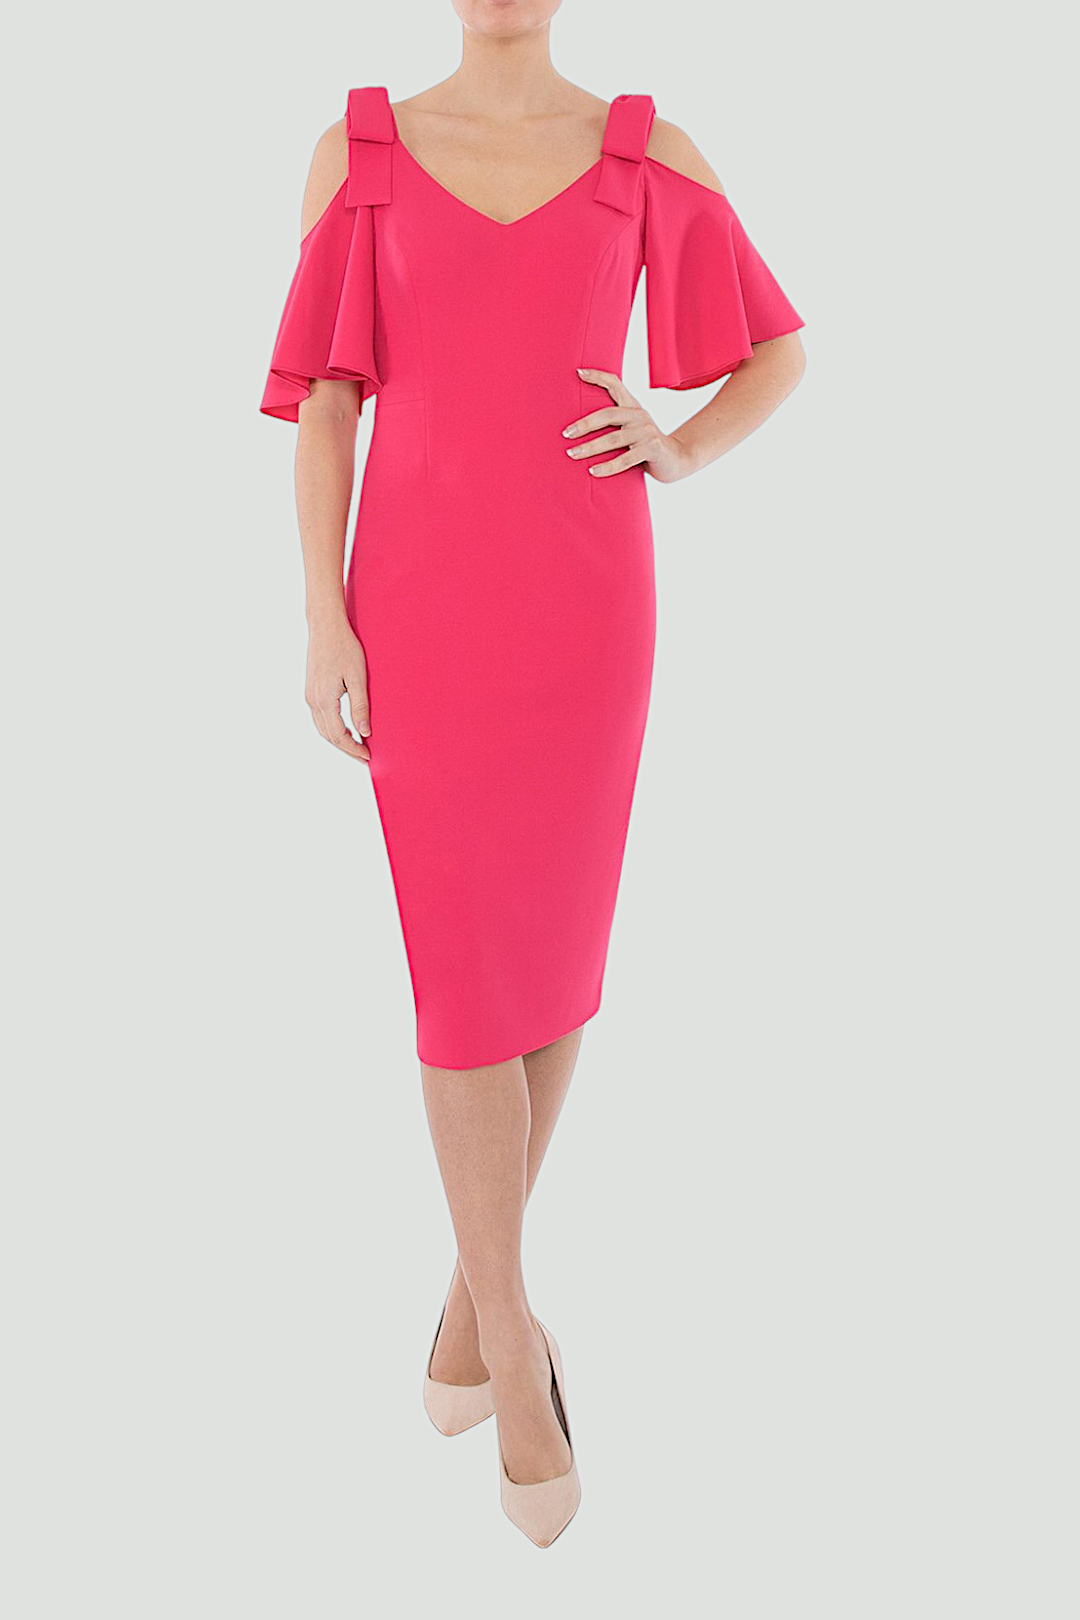 Anthea Crawford Hot Pink Cold Shoulder Dress